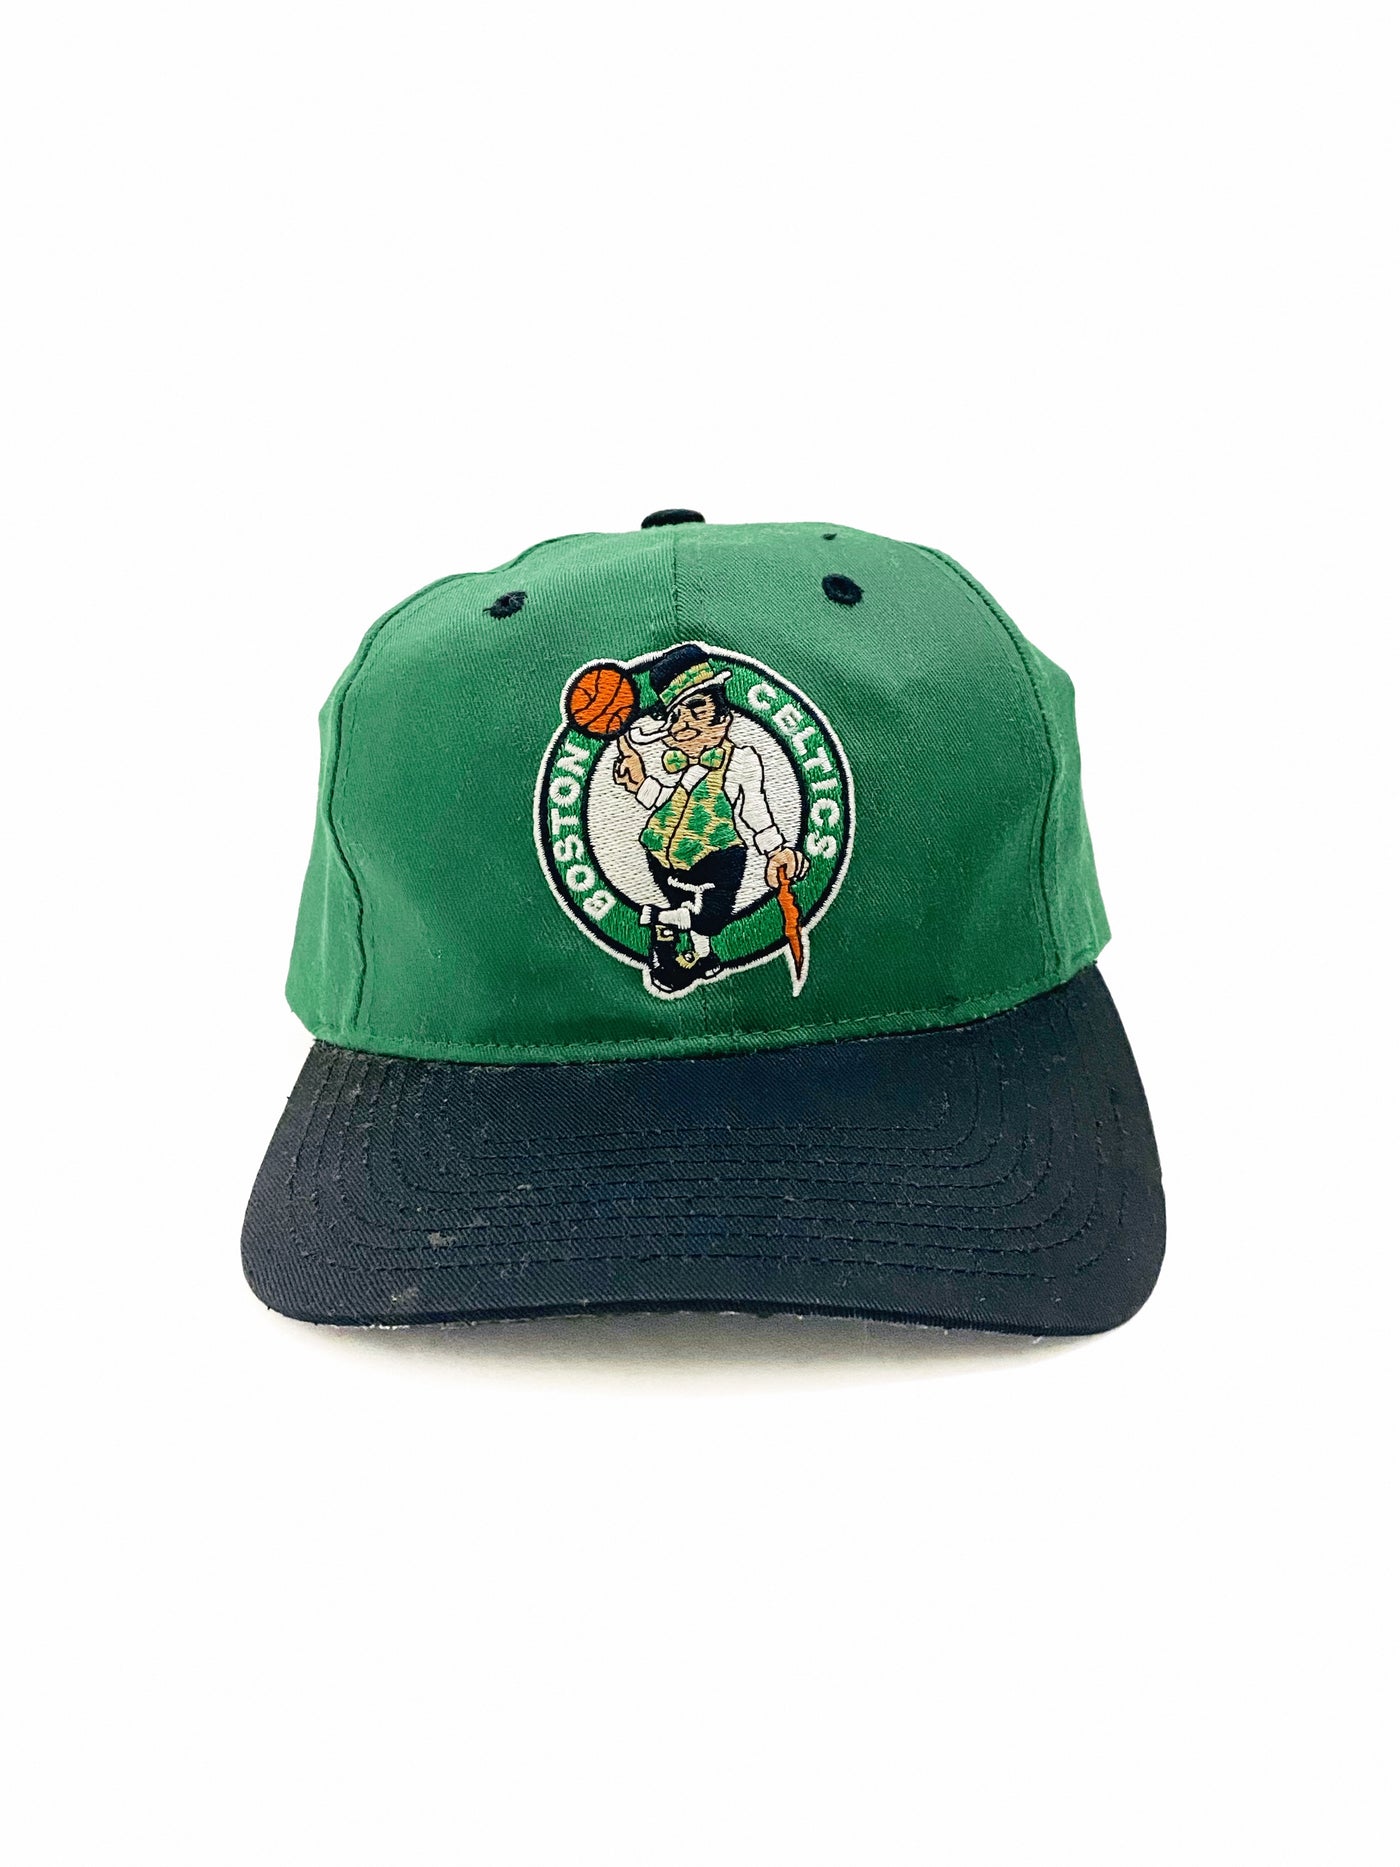 Vintage 90s Boston Celtics Snapback